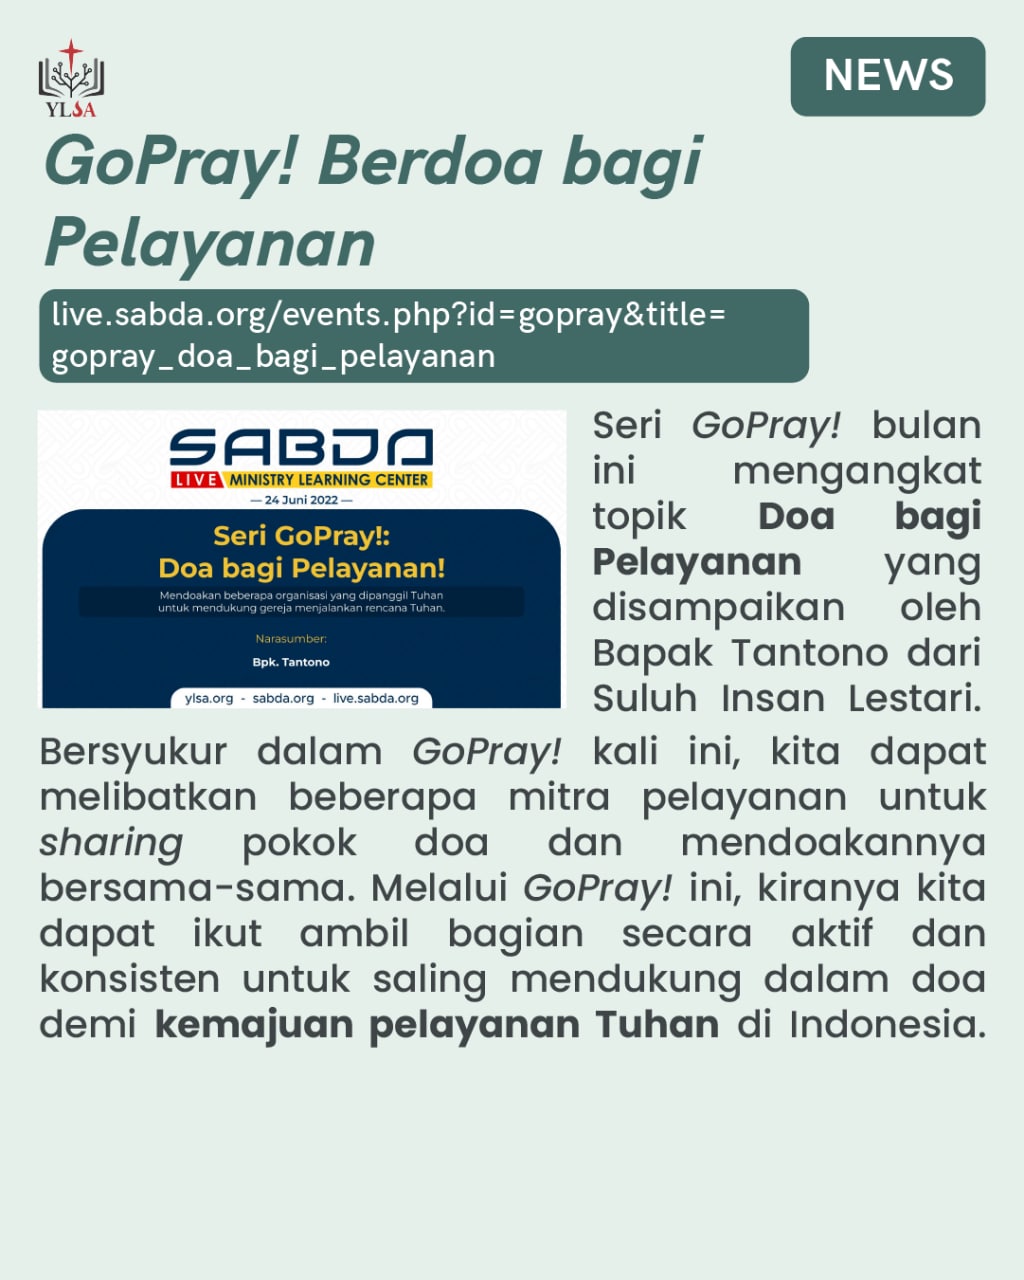 Seri GoPray! Doa bagi Pelayanan disampaikan oleh Bapak Tantono dari SIL.